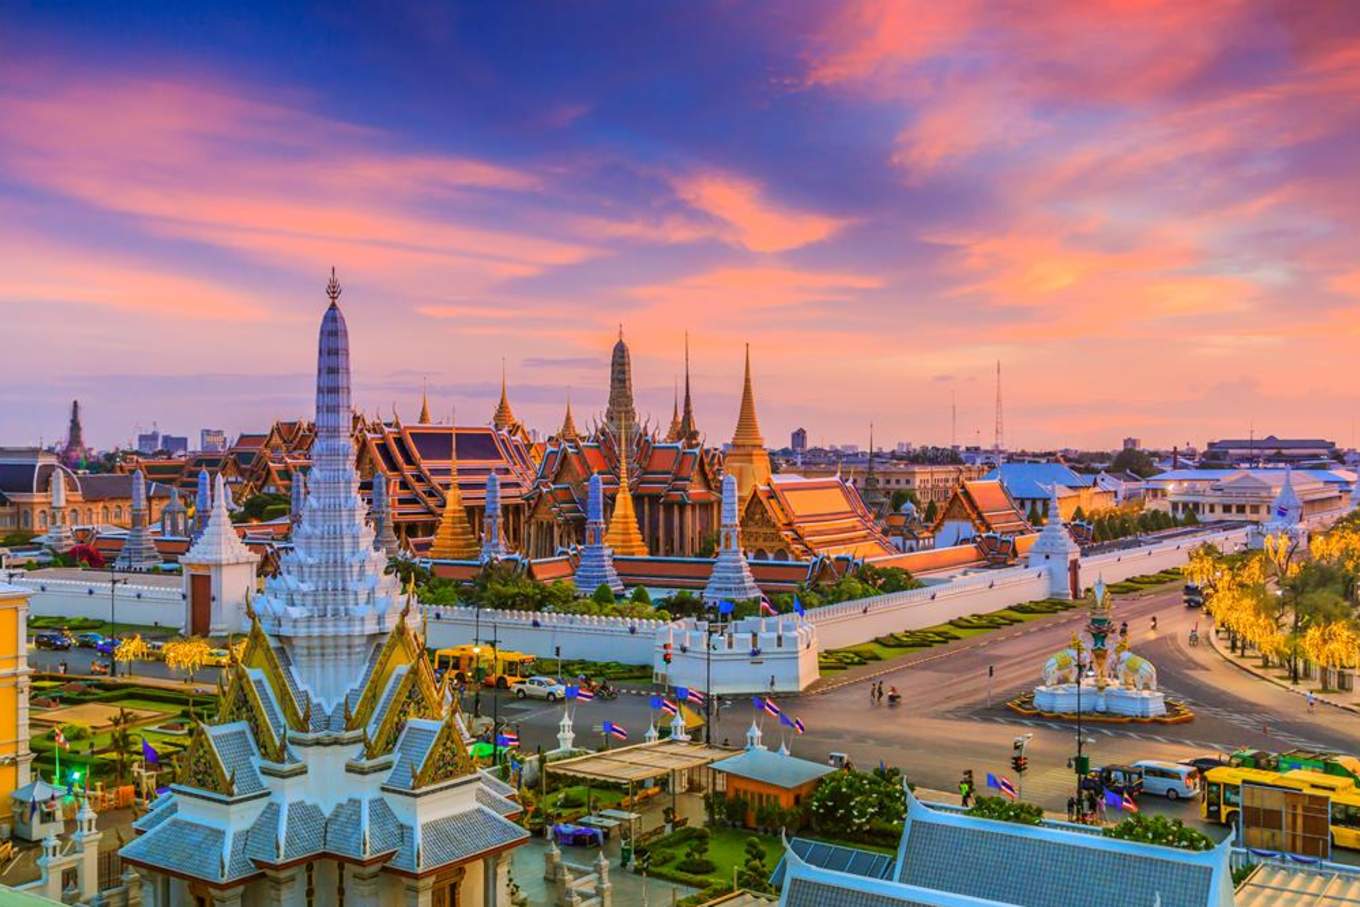 Tuy nhiên, tên cũ quen thuộc lâu nay là Bangkok thì vẫn được công nhận. (Nguồn ảnh: kho ảnh Pixabay)